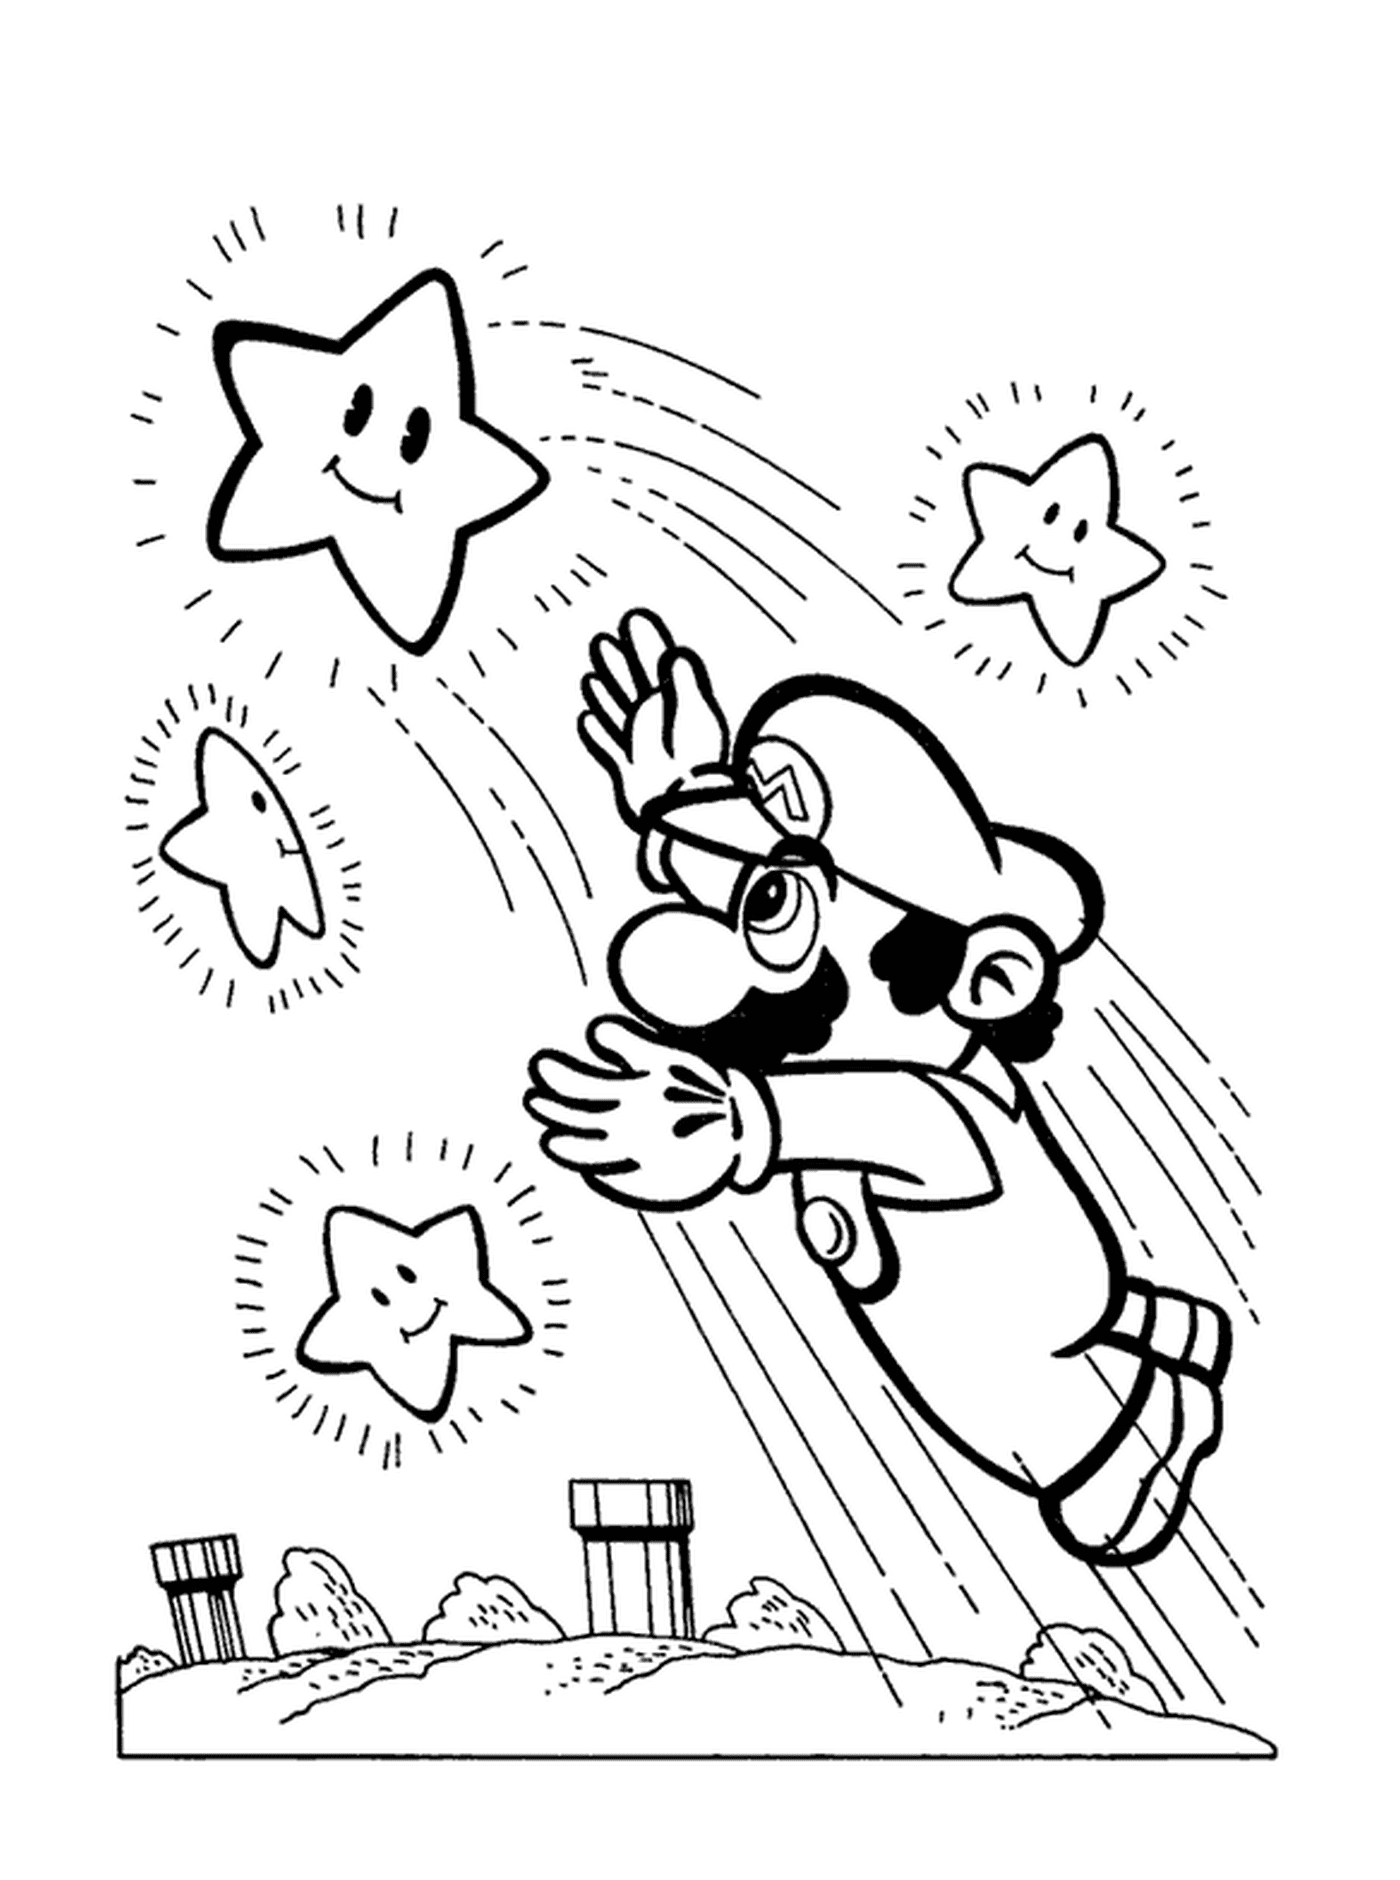  Марио захватывает яркую звезду 